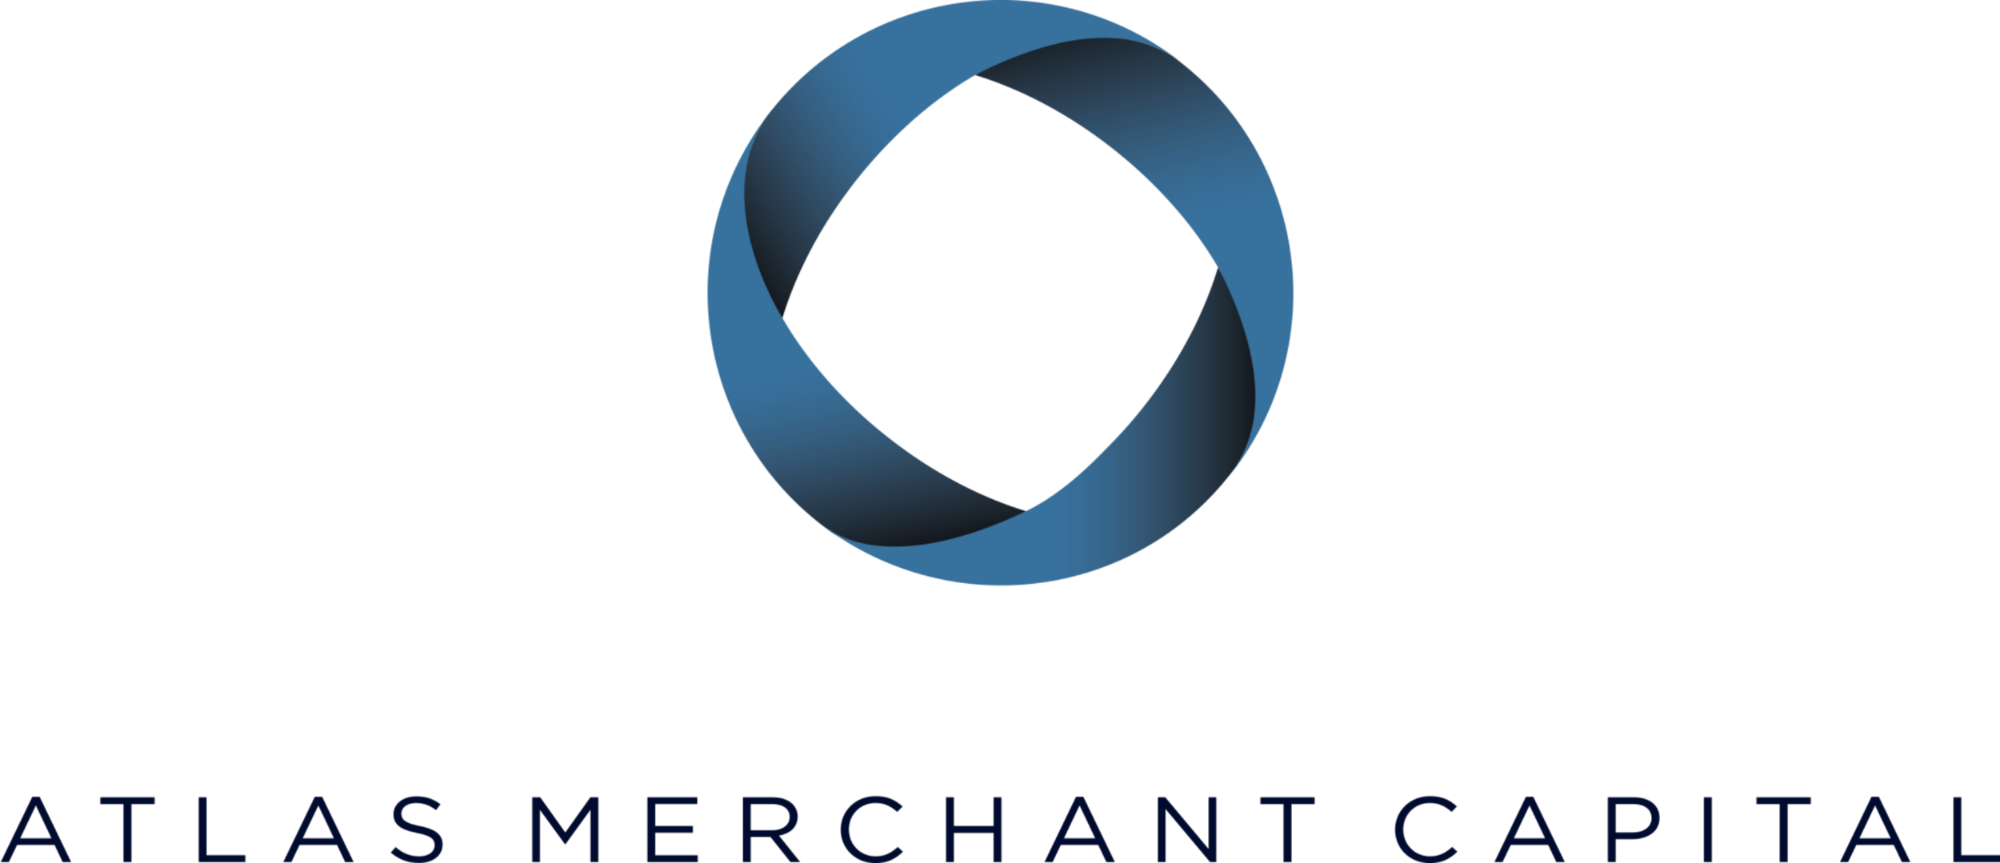 MarshBerry / Atlast Merchant Capital